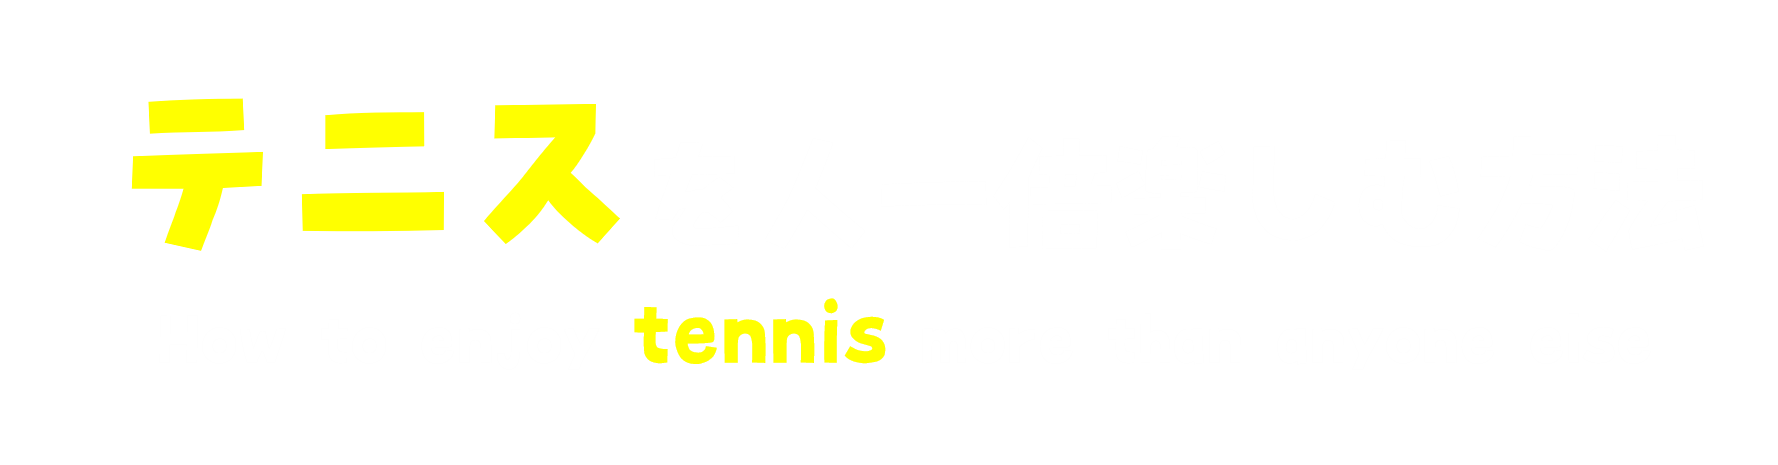 テニスを人一倍楽しむ方法